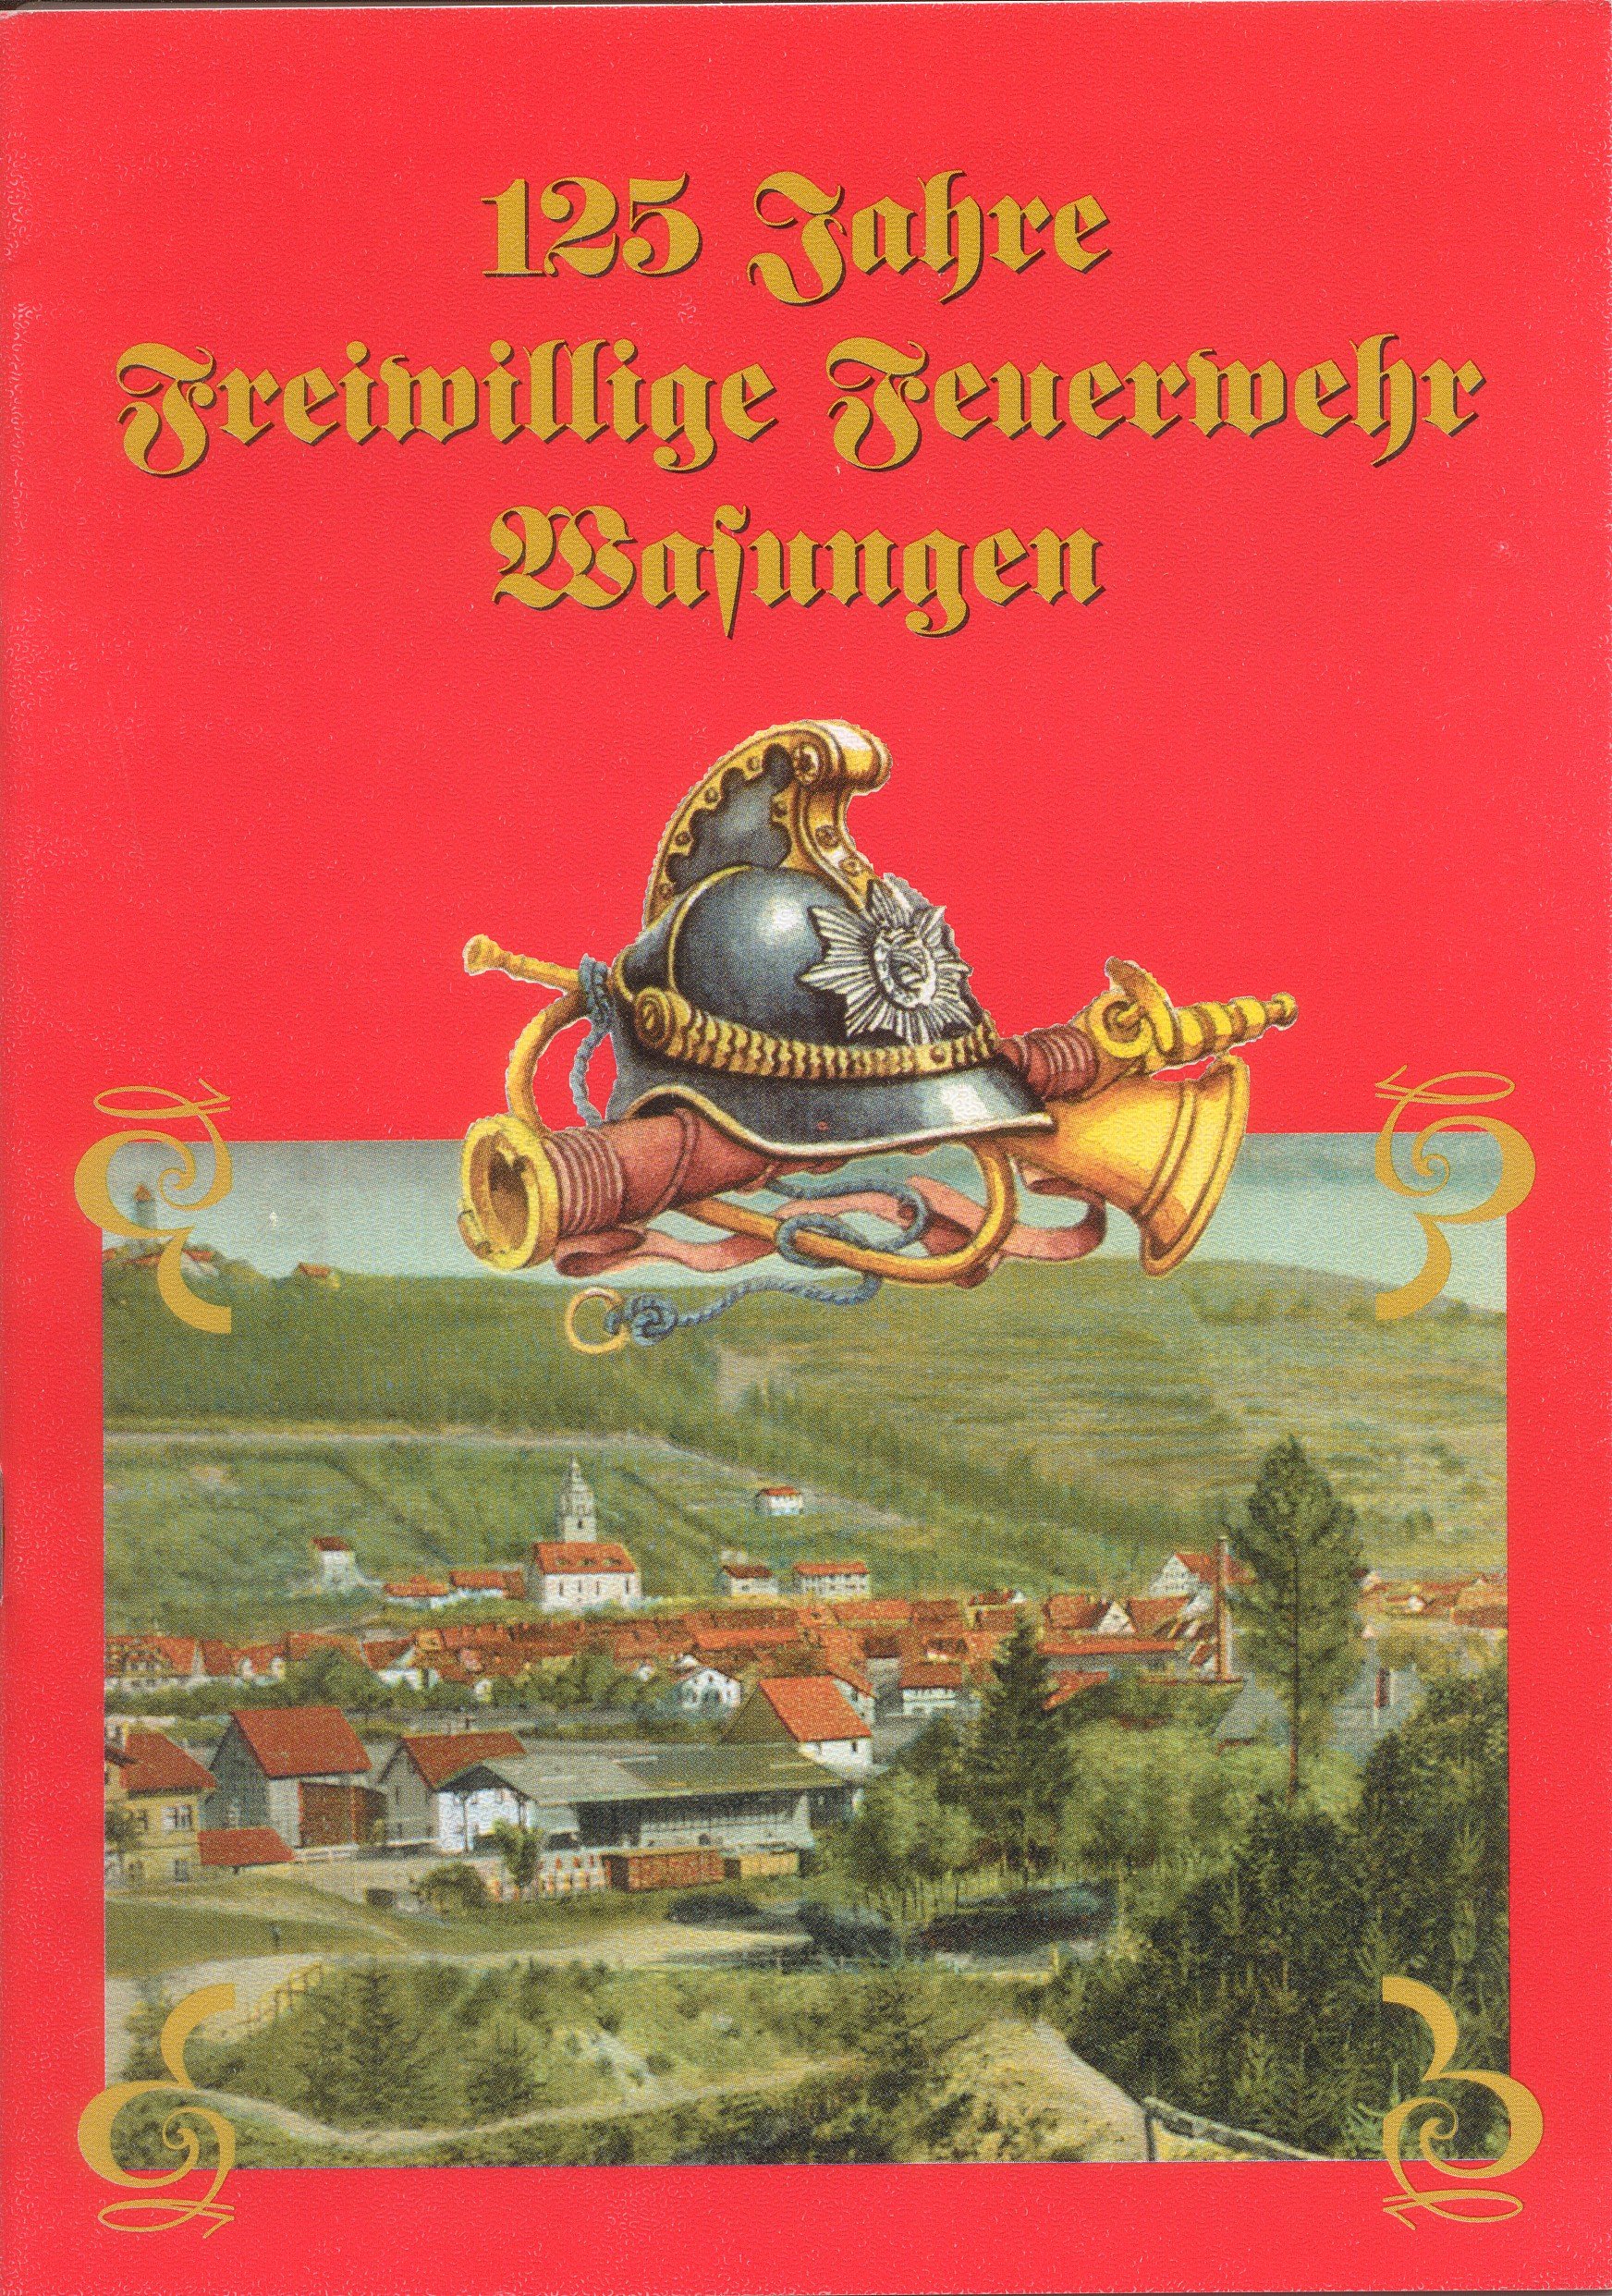 Festschrift FF Wasungen (Feuerwehrmuseum Grethen CC BY-NC-SA)